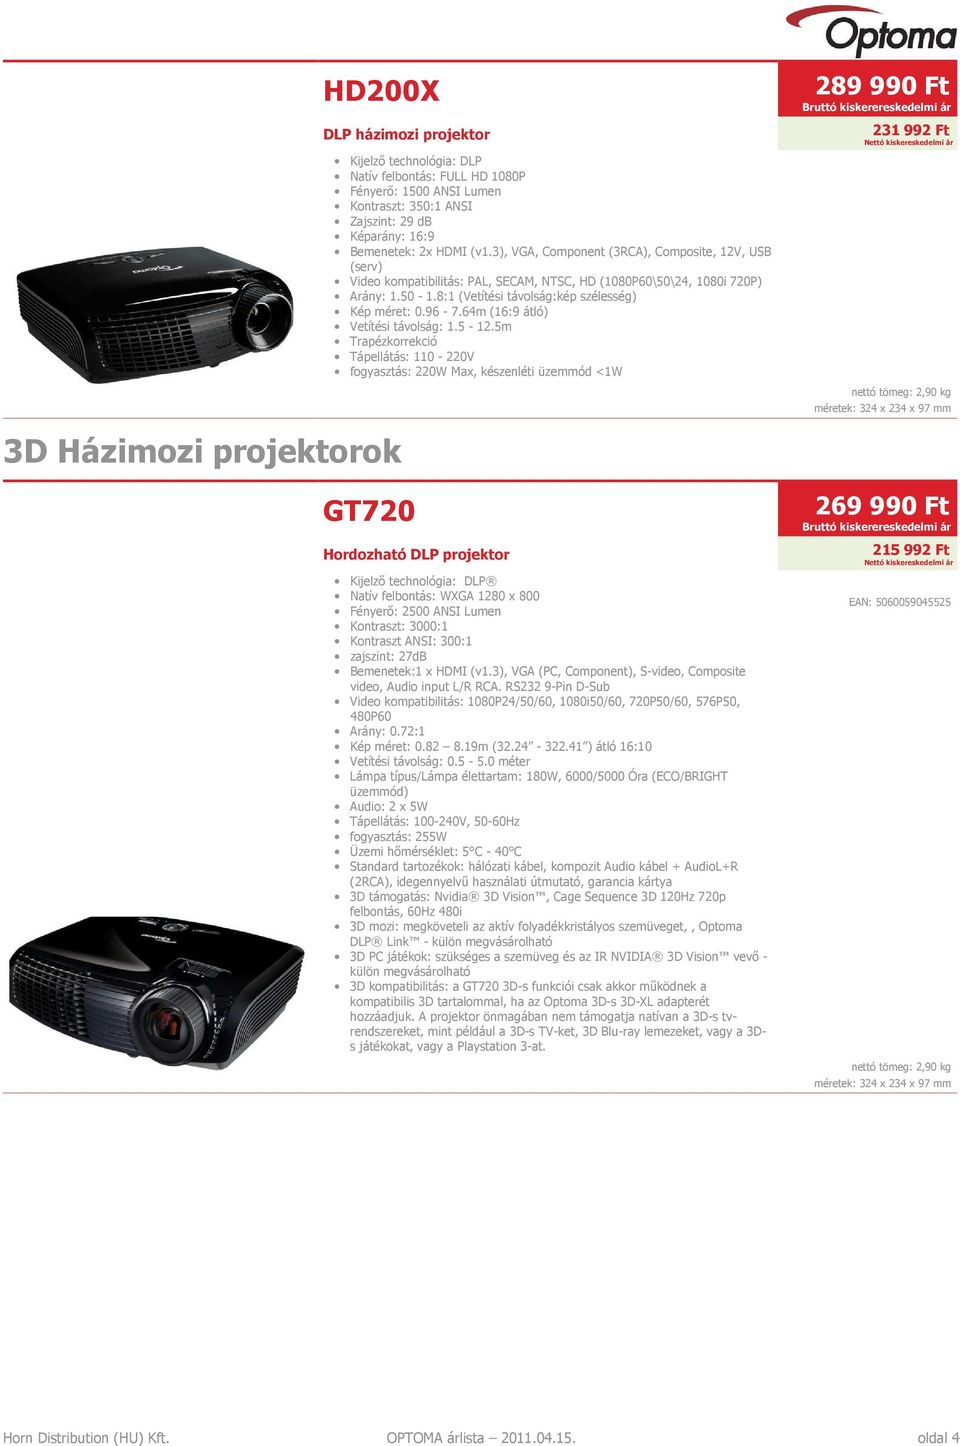 64m (16:9 átló) GT720 Hordozható DLP projektor Natív felbontás: WXGA 1280 x 800 Fényerő: 2500 ANSI Lumen Kontraszt: 3000:1 Kontraszt ANSI: 300:1 zajszint: 27dB Bemenetek:1 x HDMI (v1.